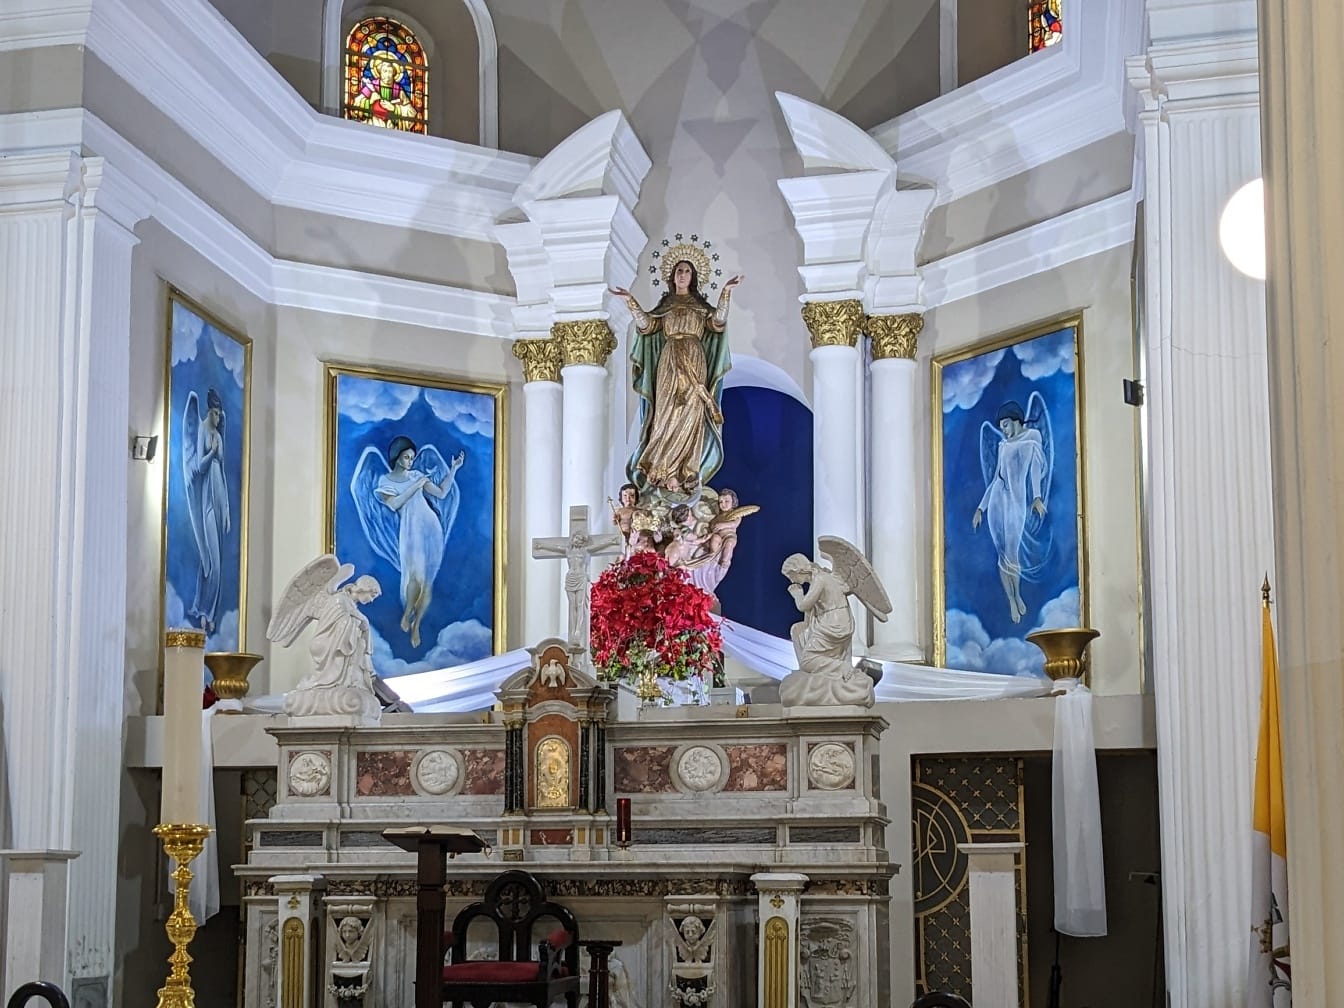 Standbeeld van de Maagd Maria met witte engelen in een kerk